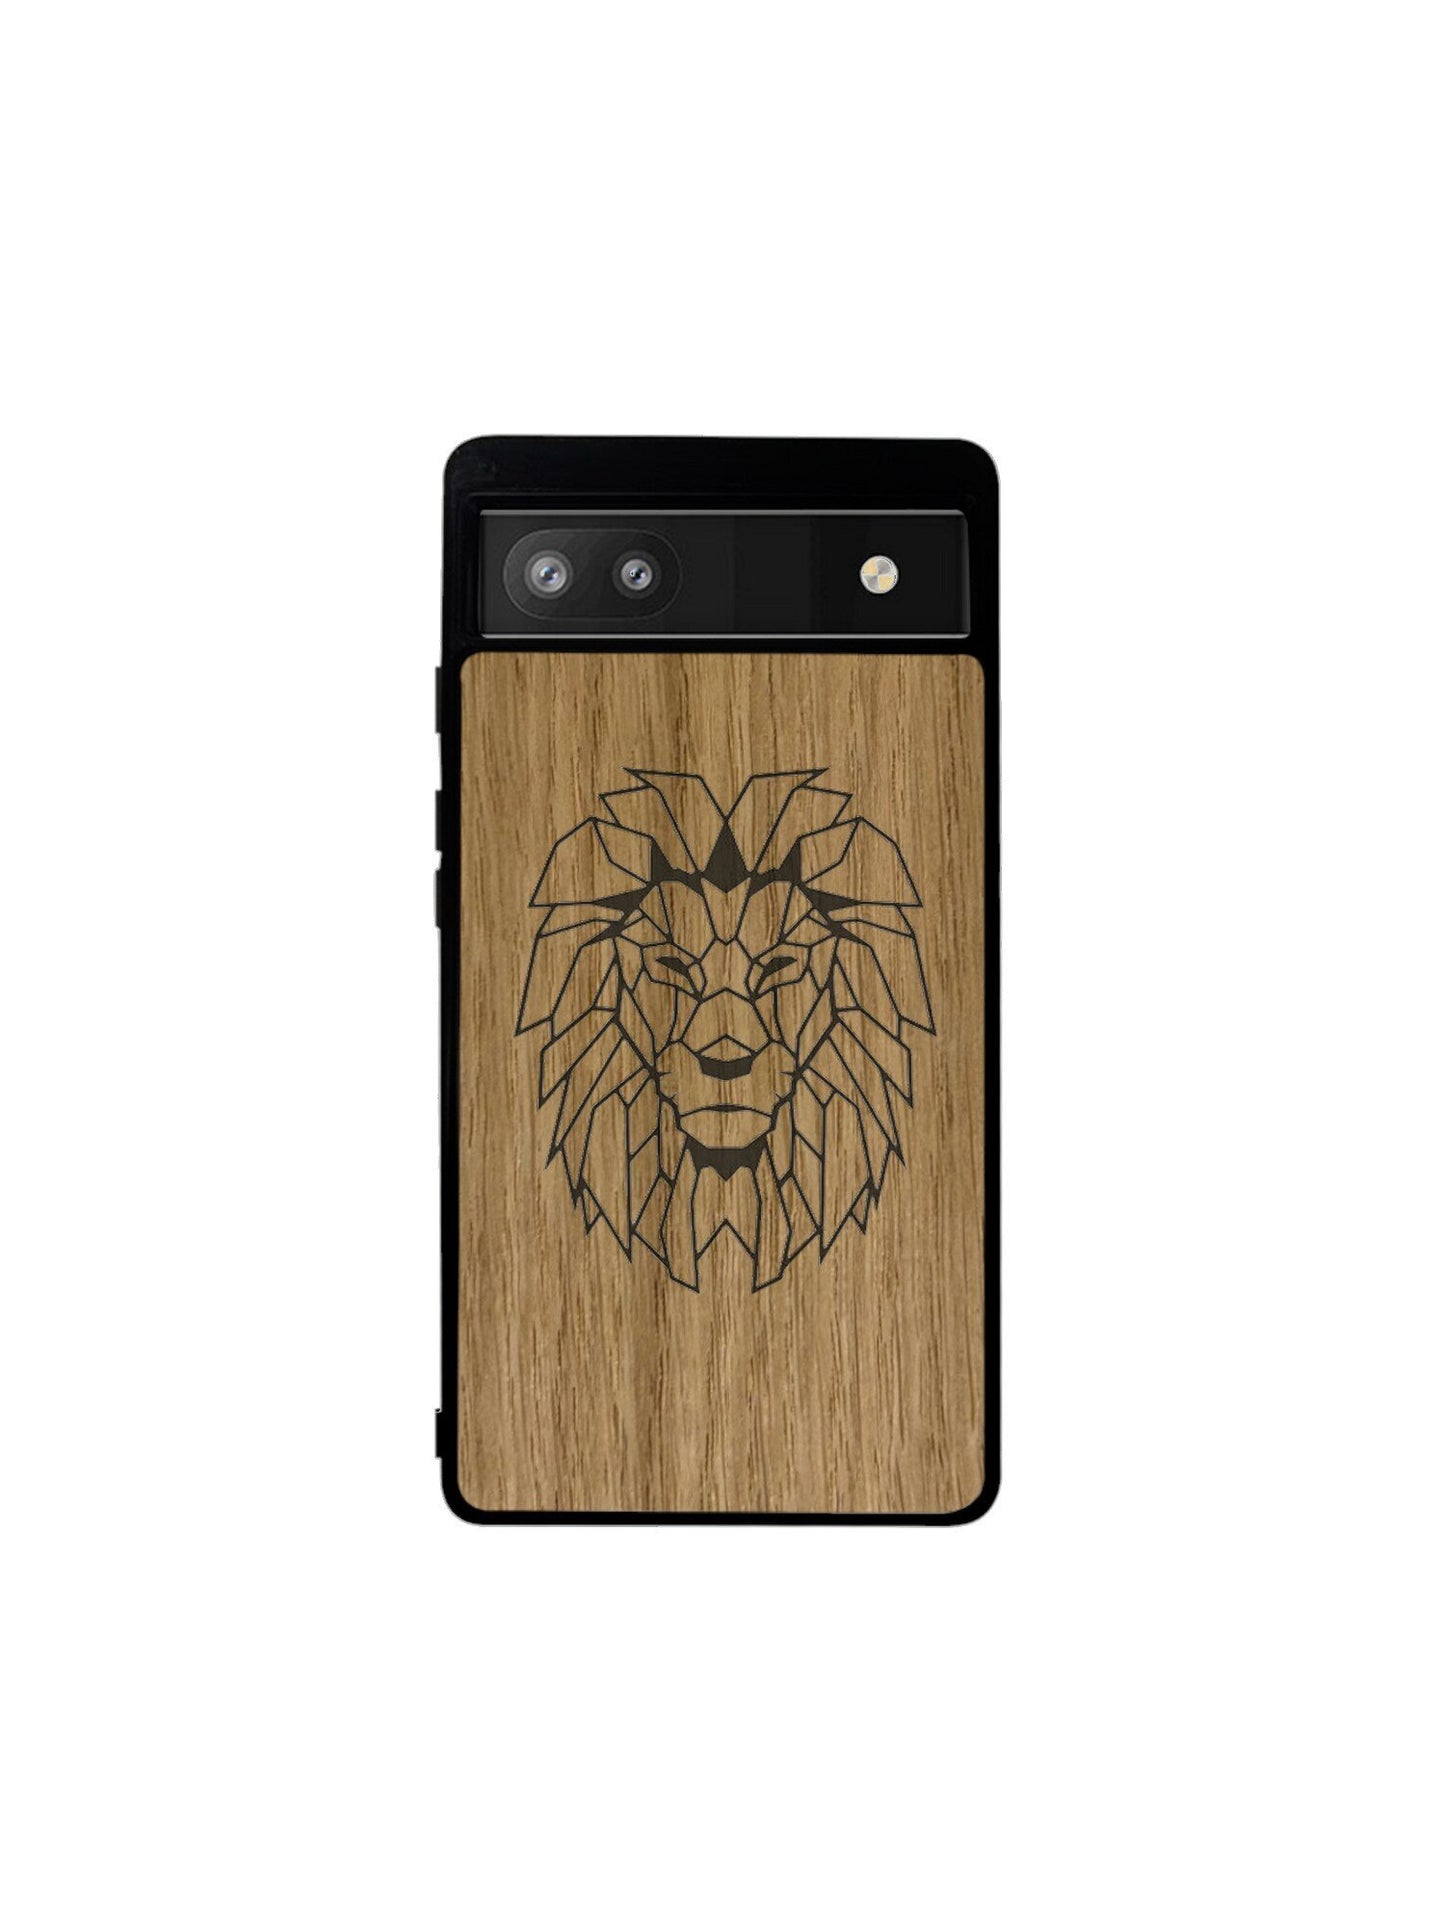 Google Pixel case - Lion engraving